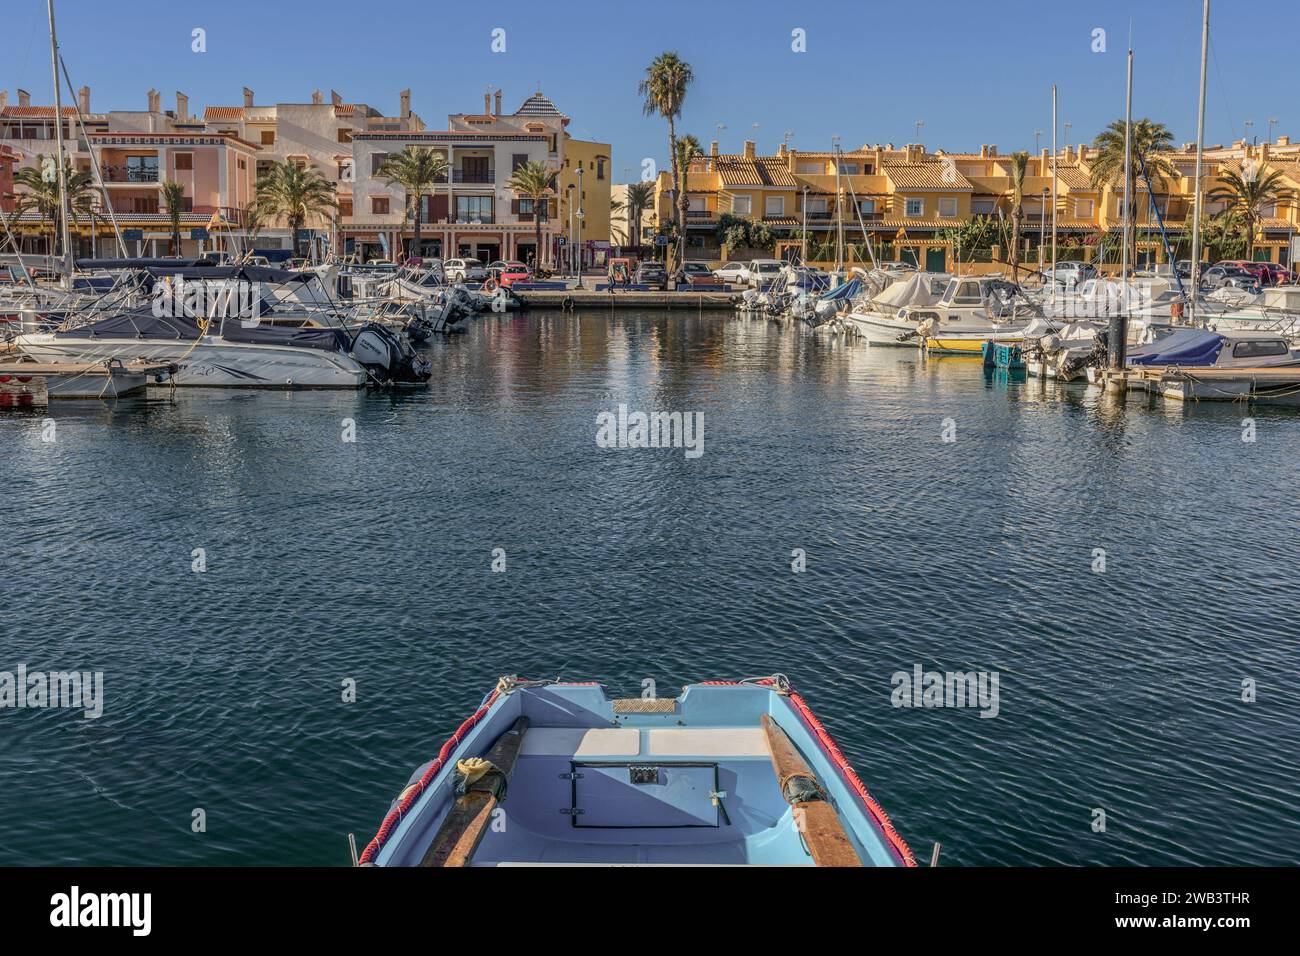 Promenade du port de pêche et de sports avec yachts bateaux de pêche et bateaux à voile dans la région de Cabo de Palos de Murcie, Espagne, Europe Banque D'Images